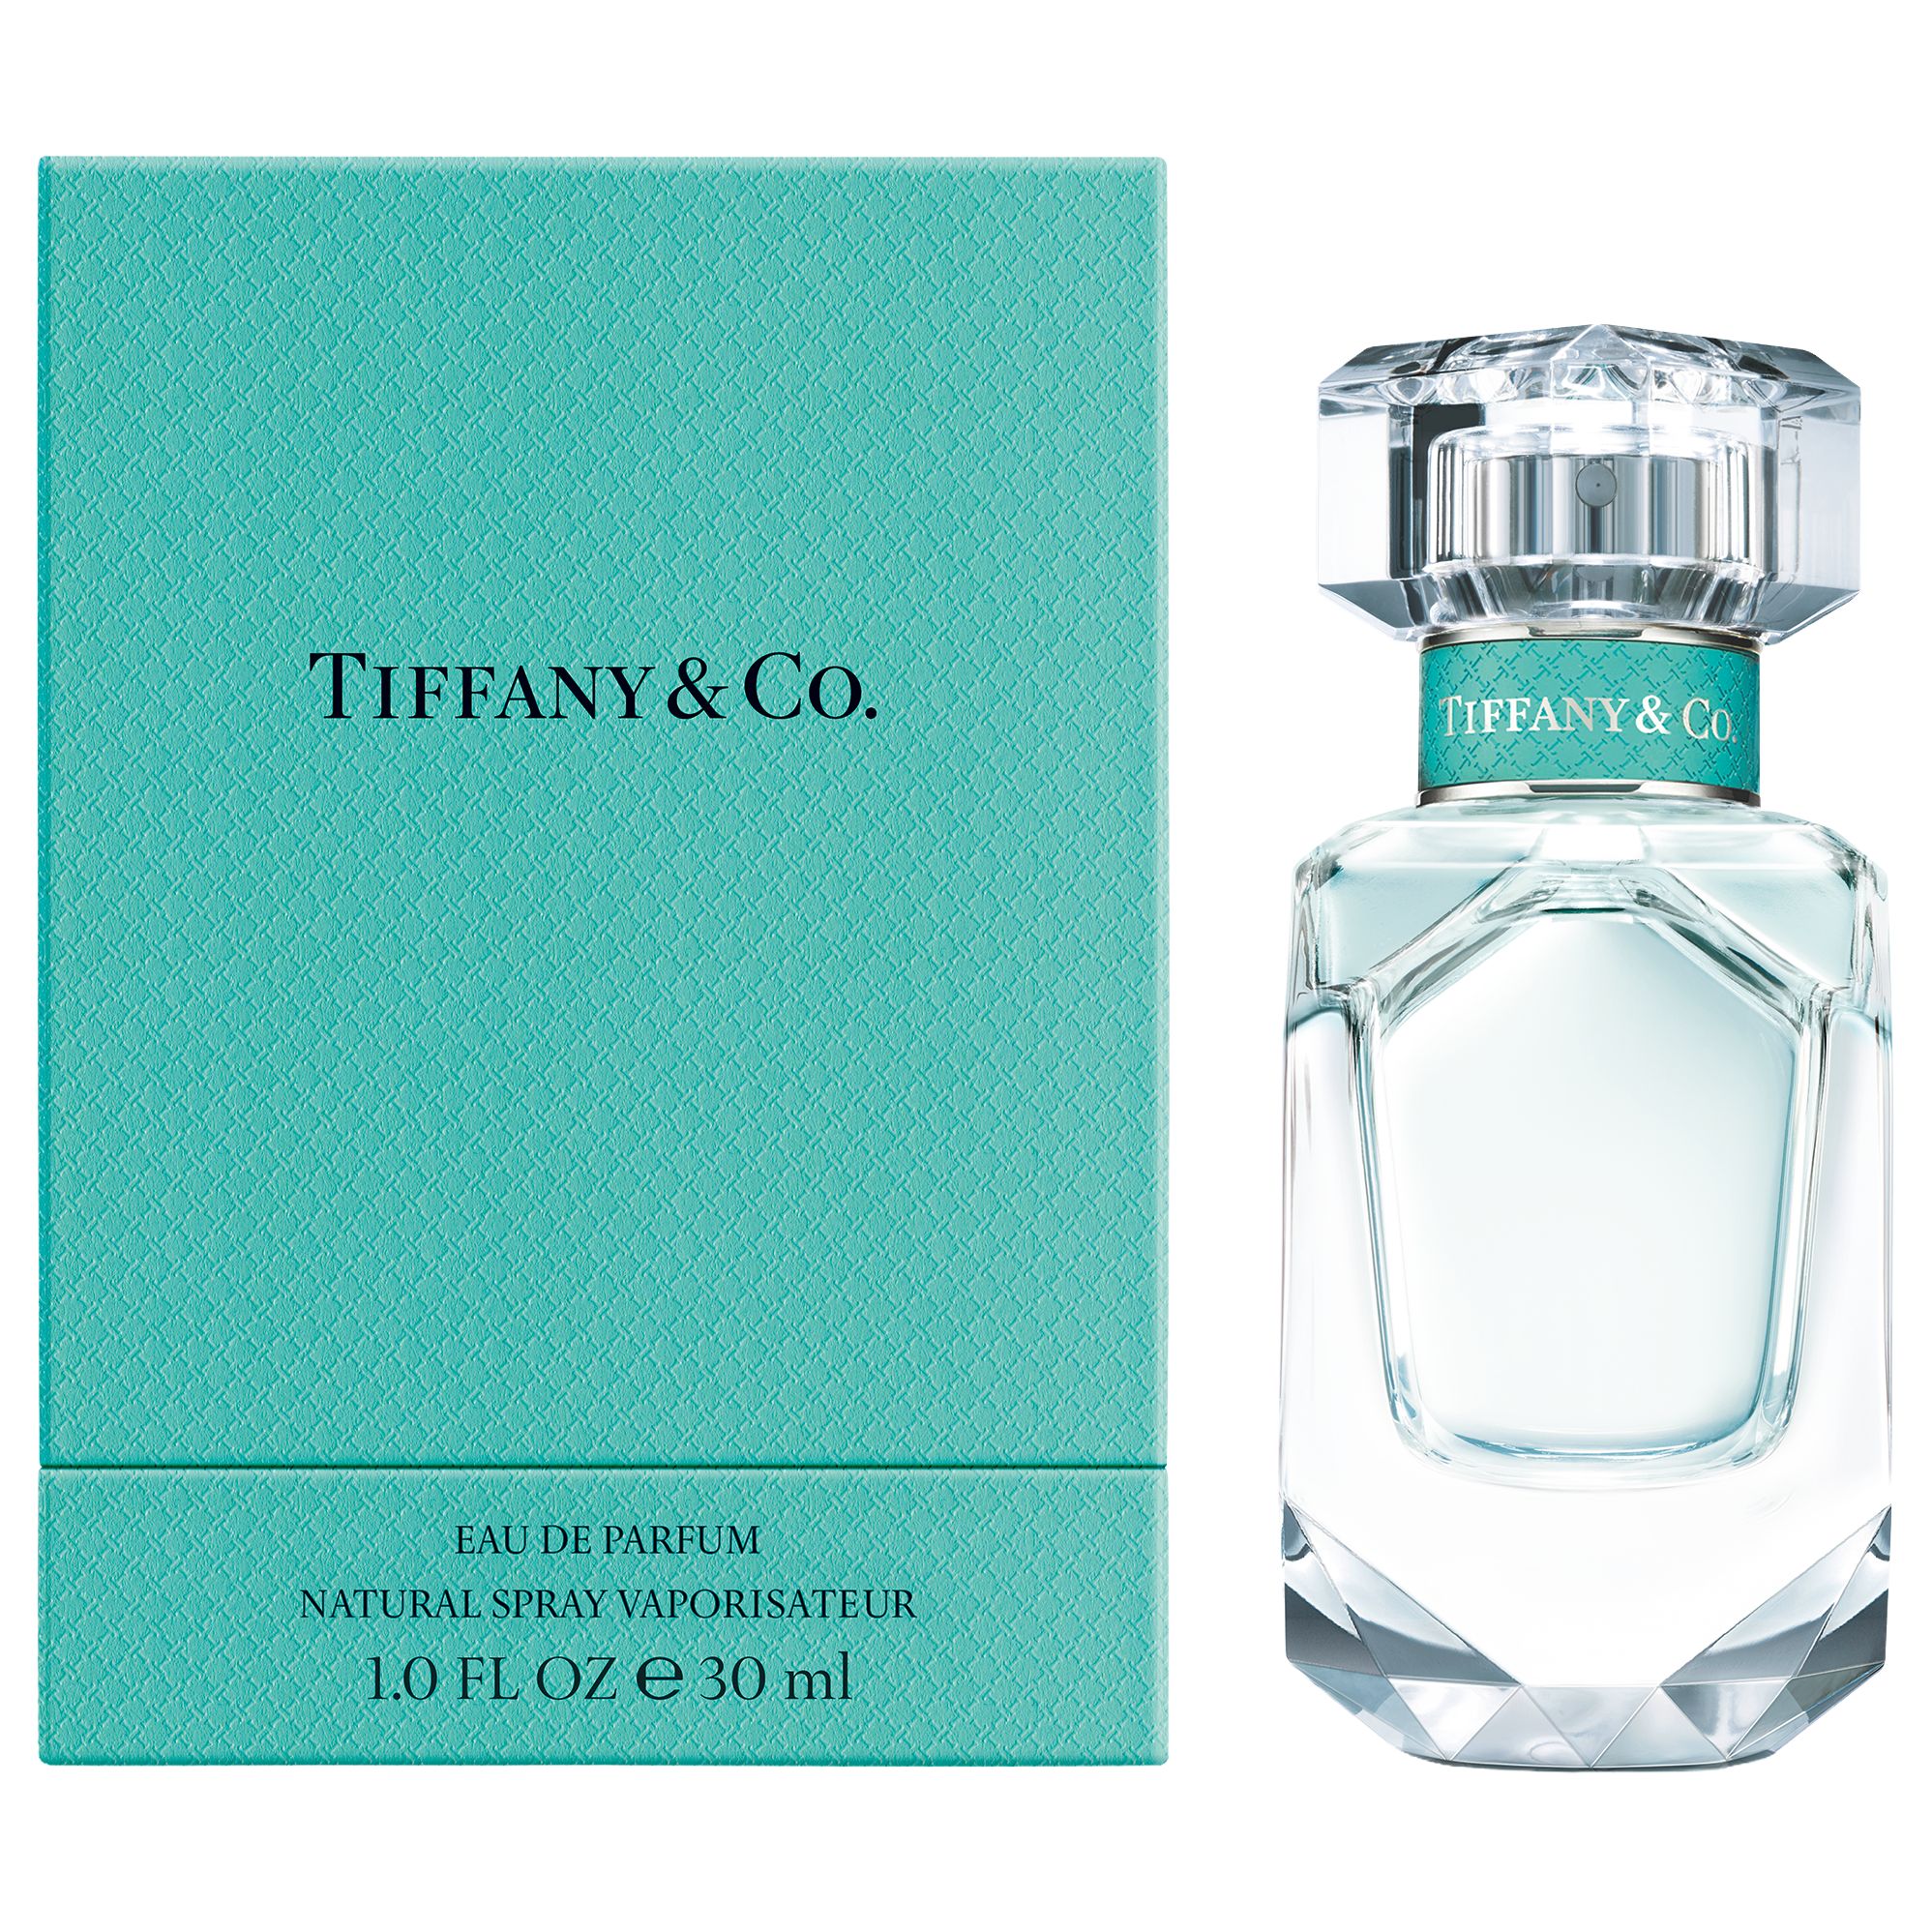 Tiffany \u0026 Co Eau de Parfum at John 